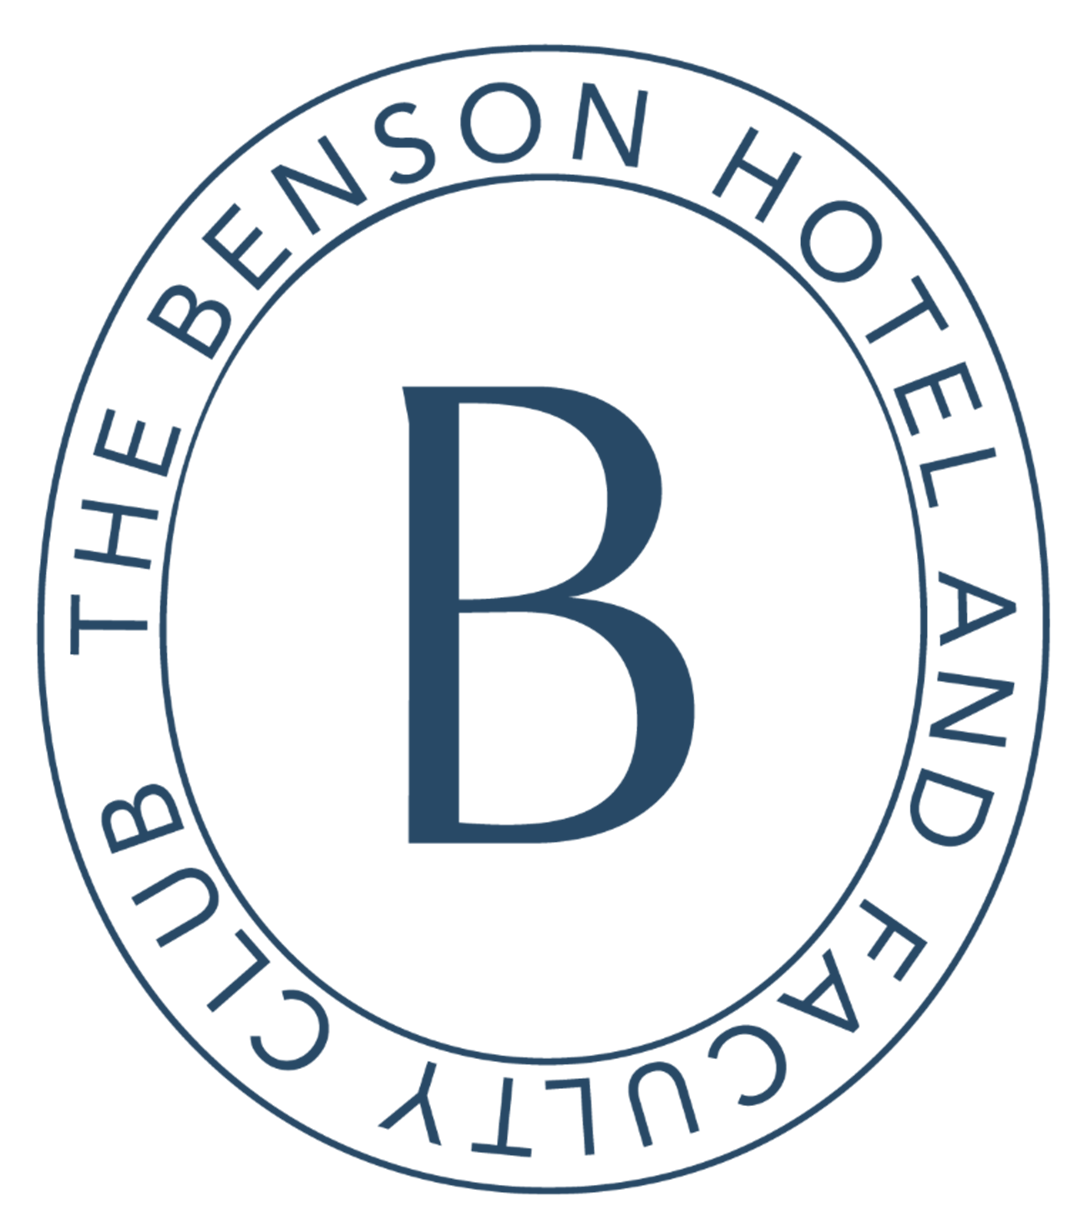 The Benson Hotel & Faculty Club logo